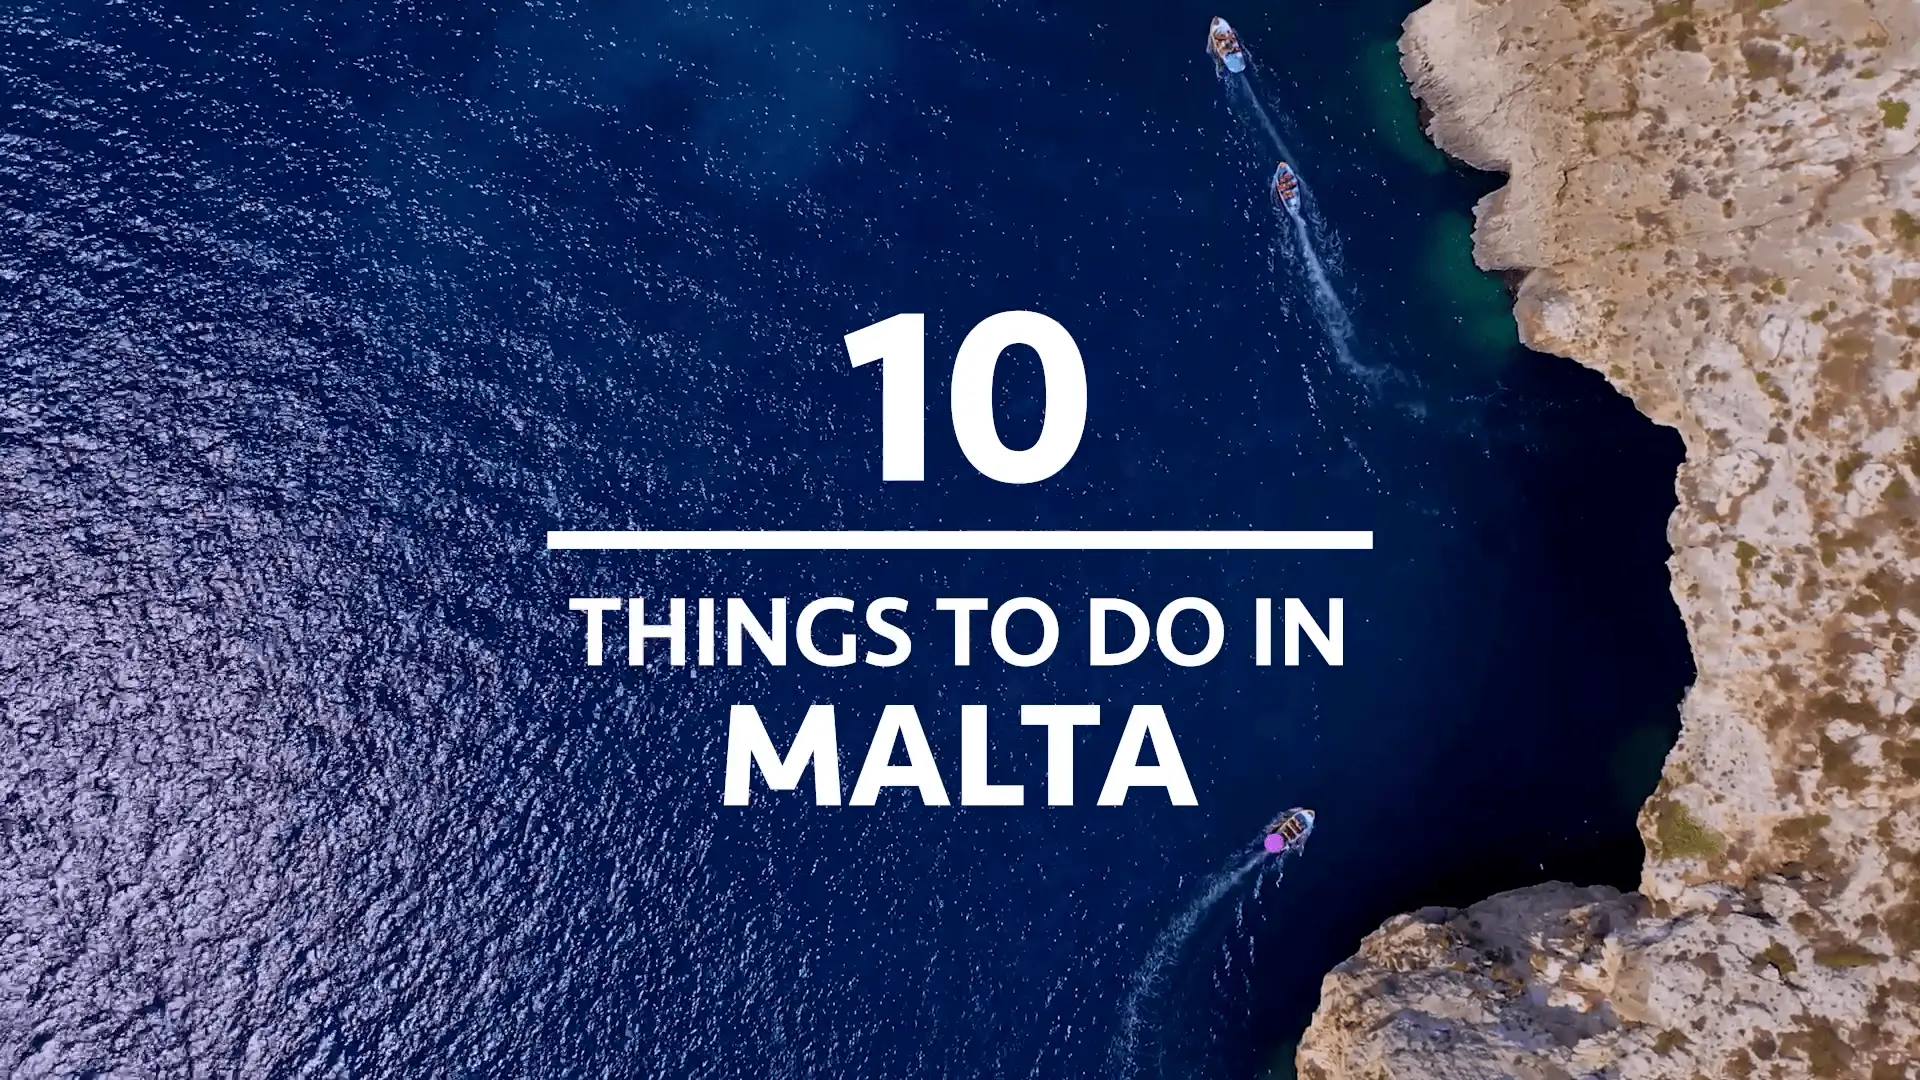 Titolo cosa fare a Malta su uno sfondo marino